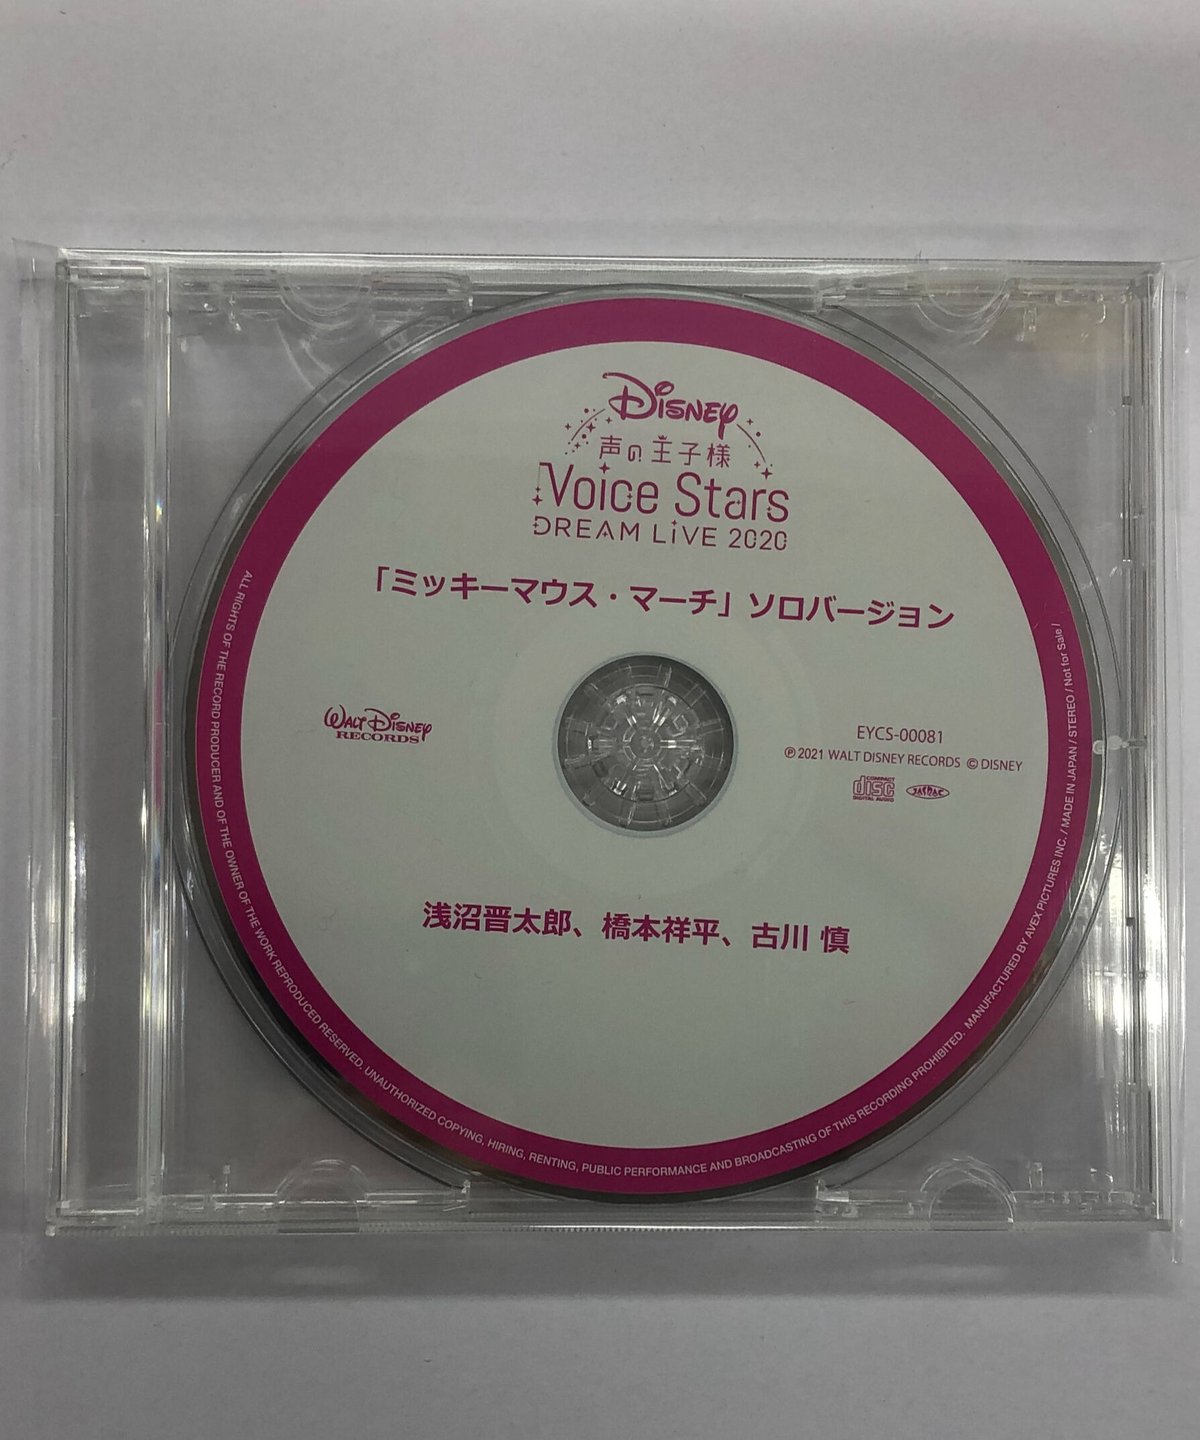 【盤面キズ有】Disney 声の王子様 Voice Stars Dream Live 2020  Amazon特典CD「ミッキーマウス・マーチ」ソロバージョンCD Amazon ver. CD